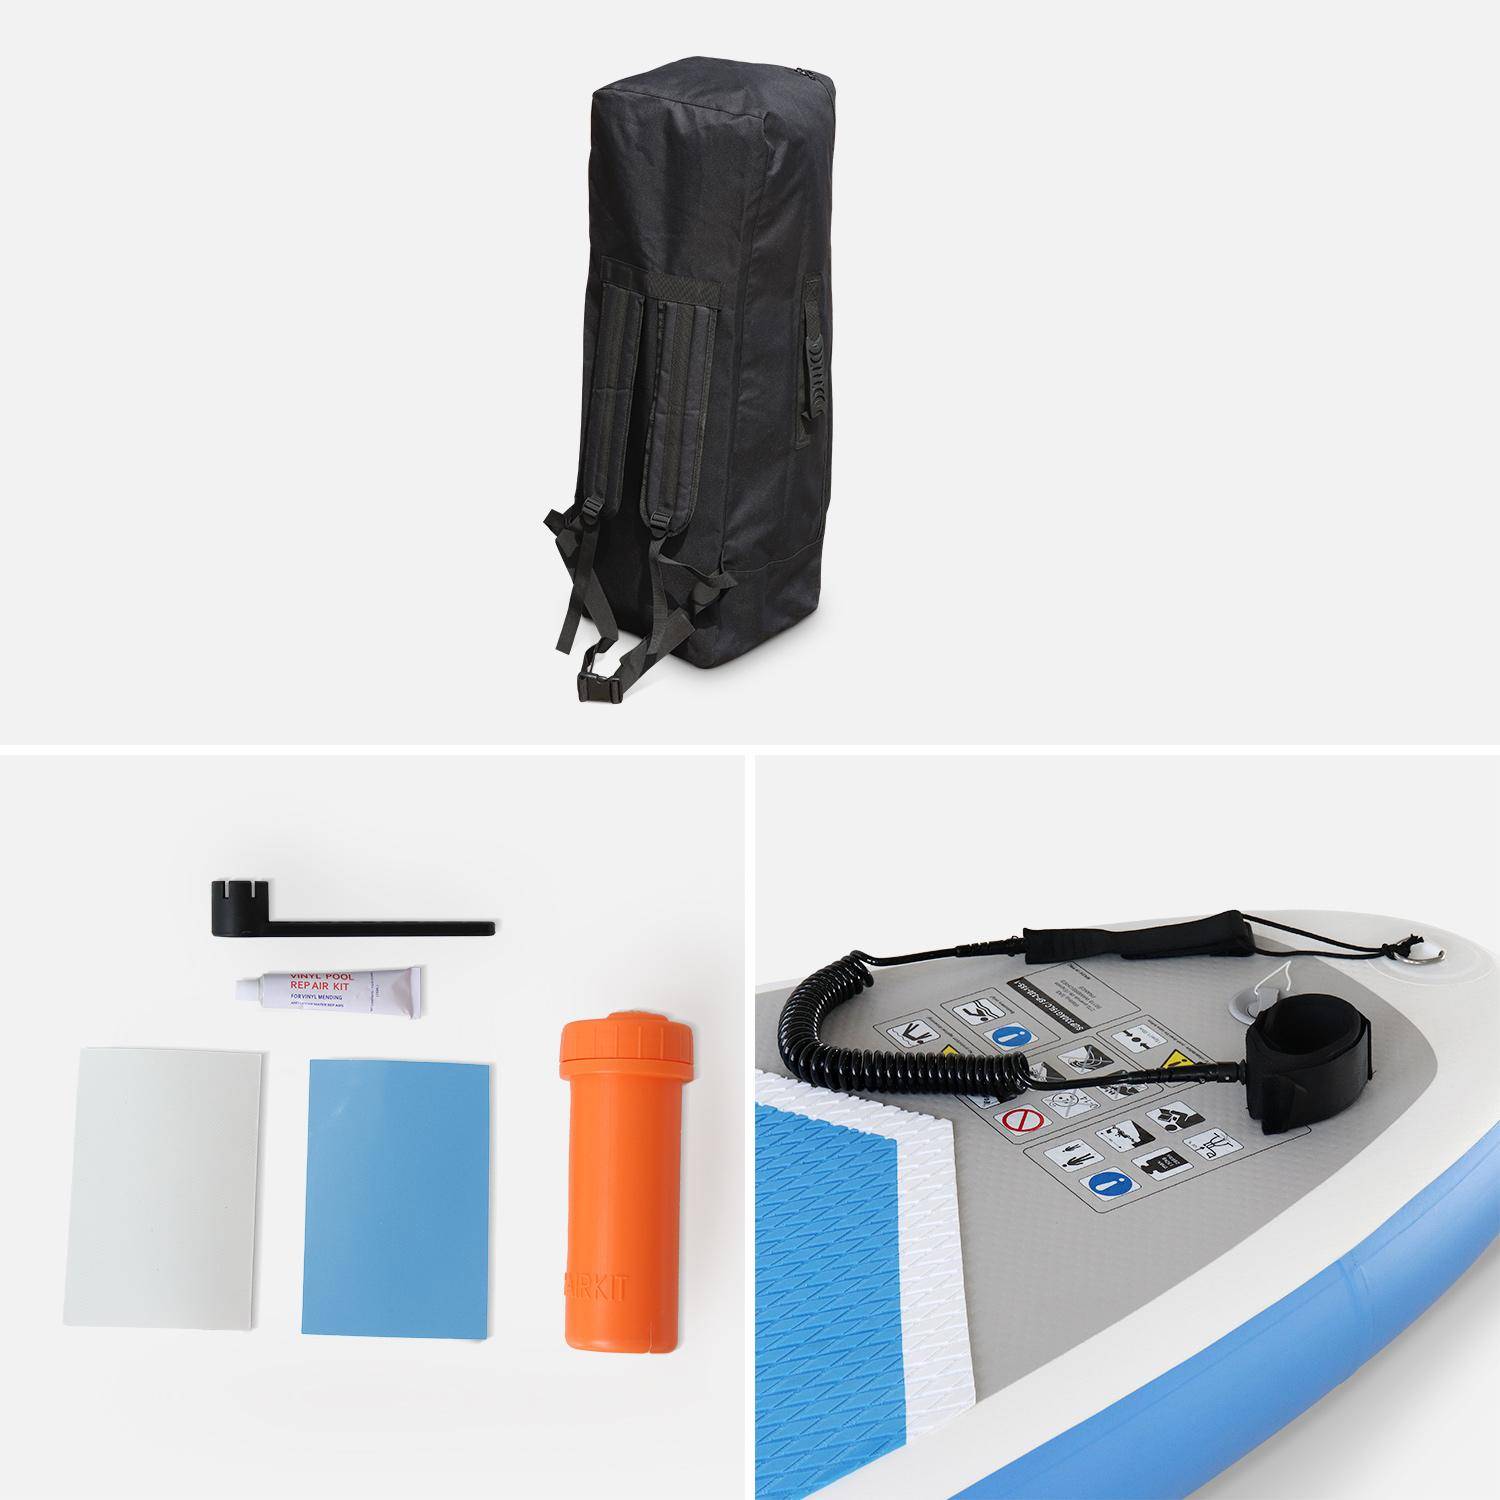 Pack stand up paddle gonflable Rico 10’10" avec pompe haute pression simple action, pagaie, leash et sac de rangement inclus Photo4